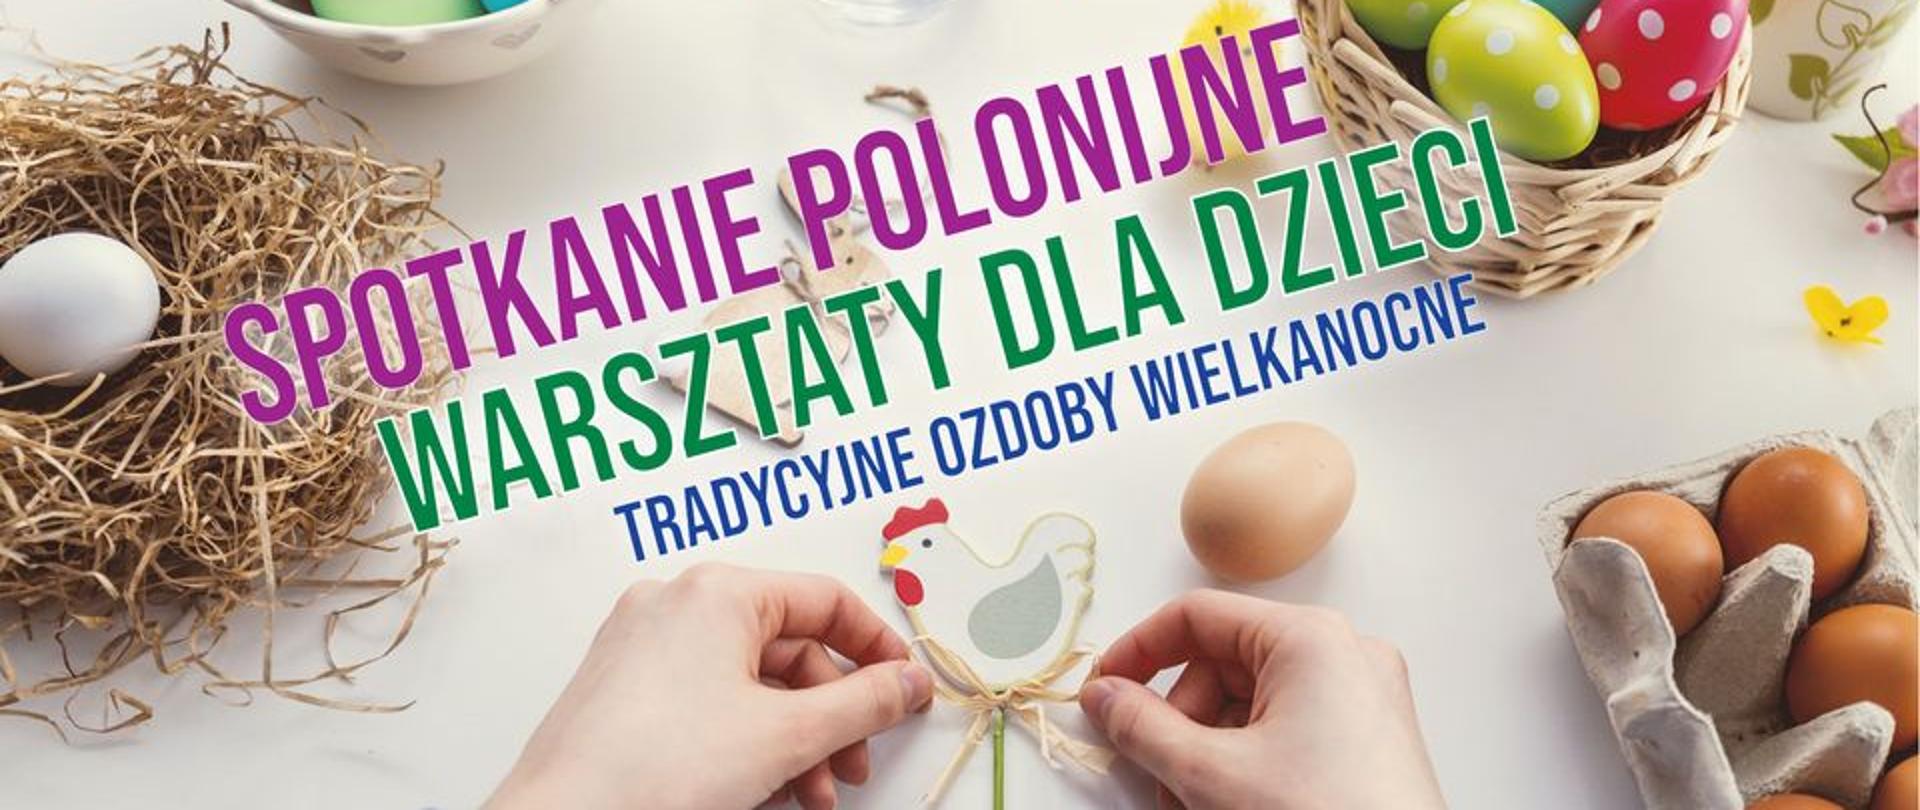 Spotkanie polonijne